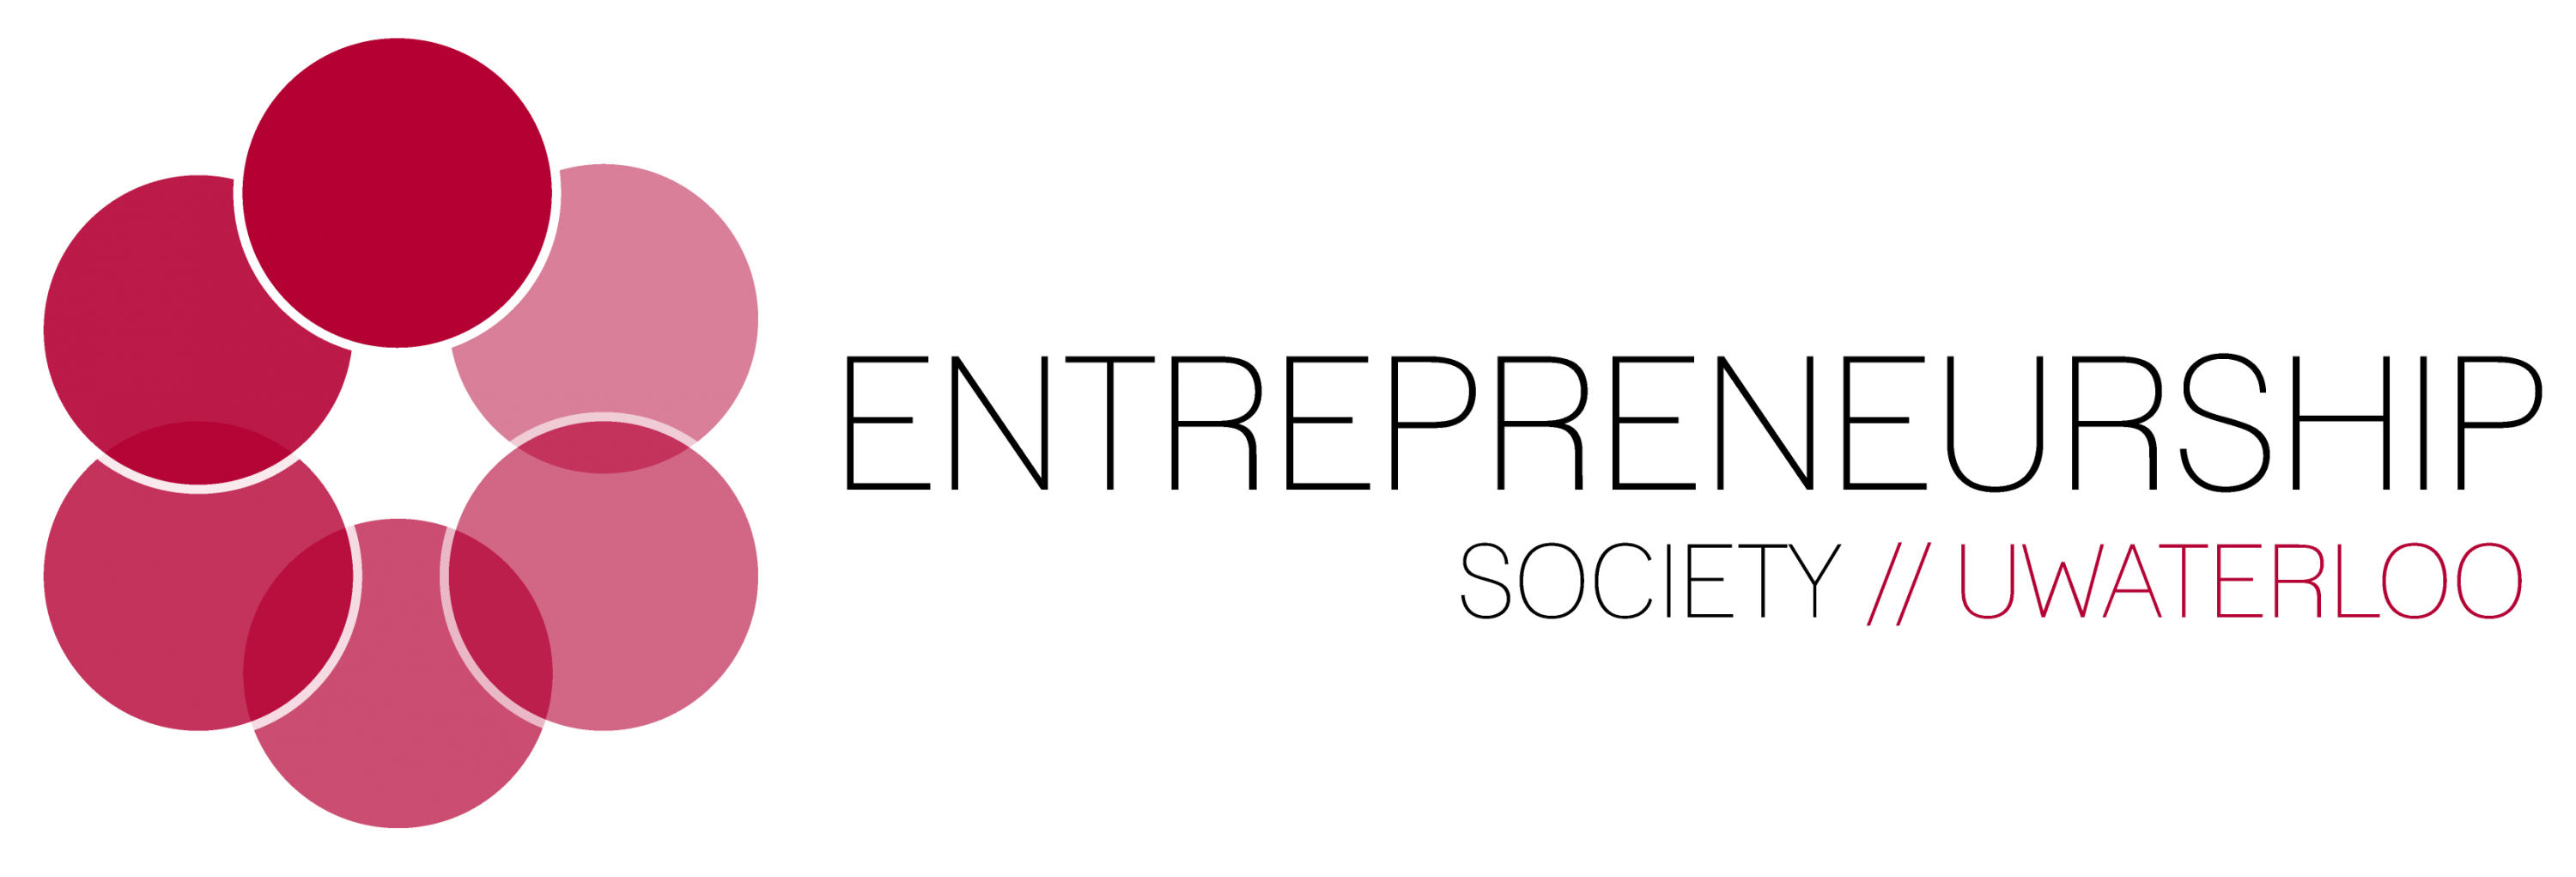 Entrepreneurship Society logo